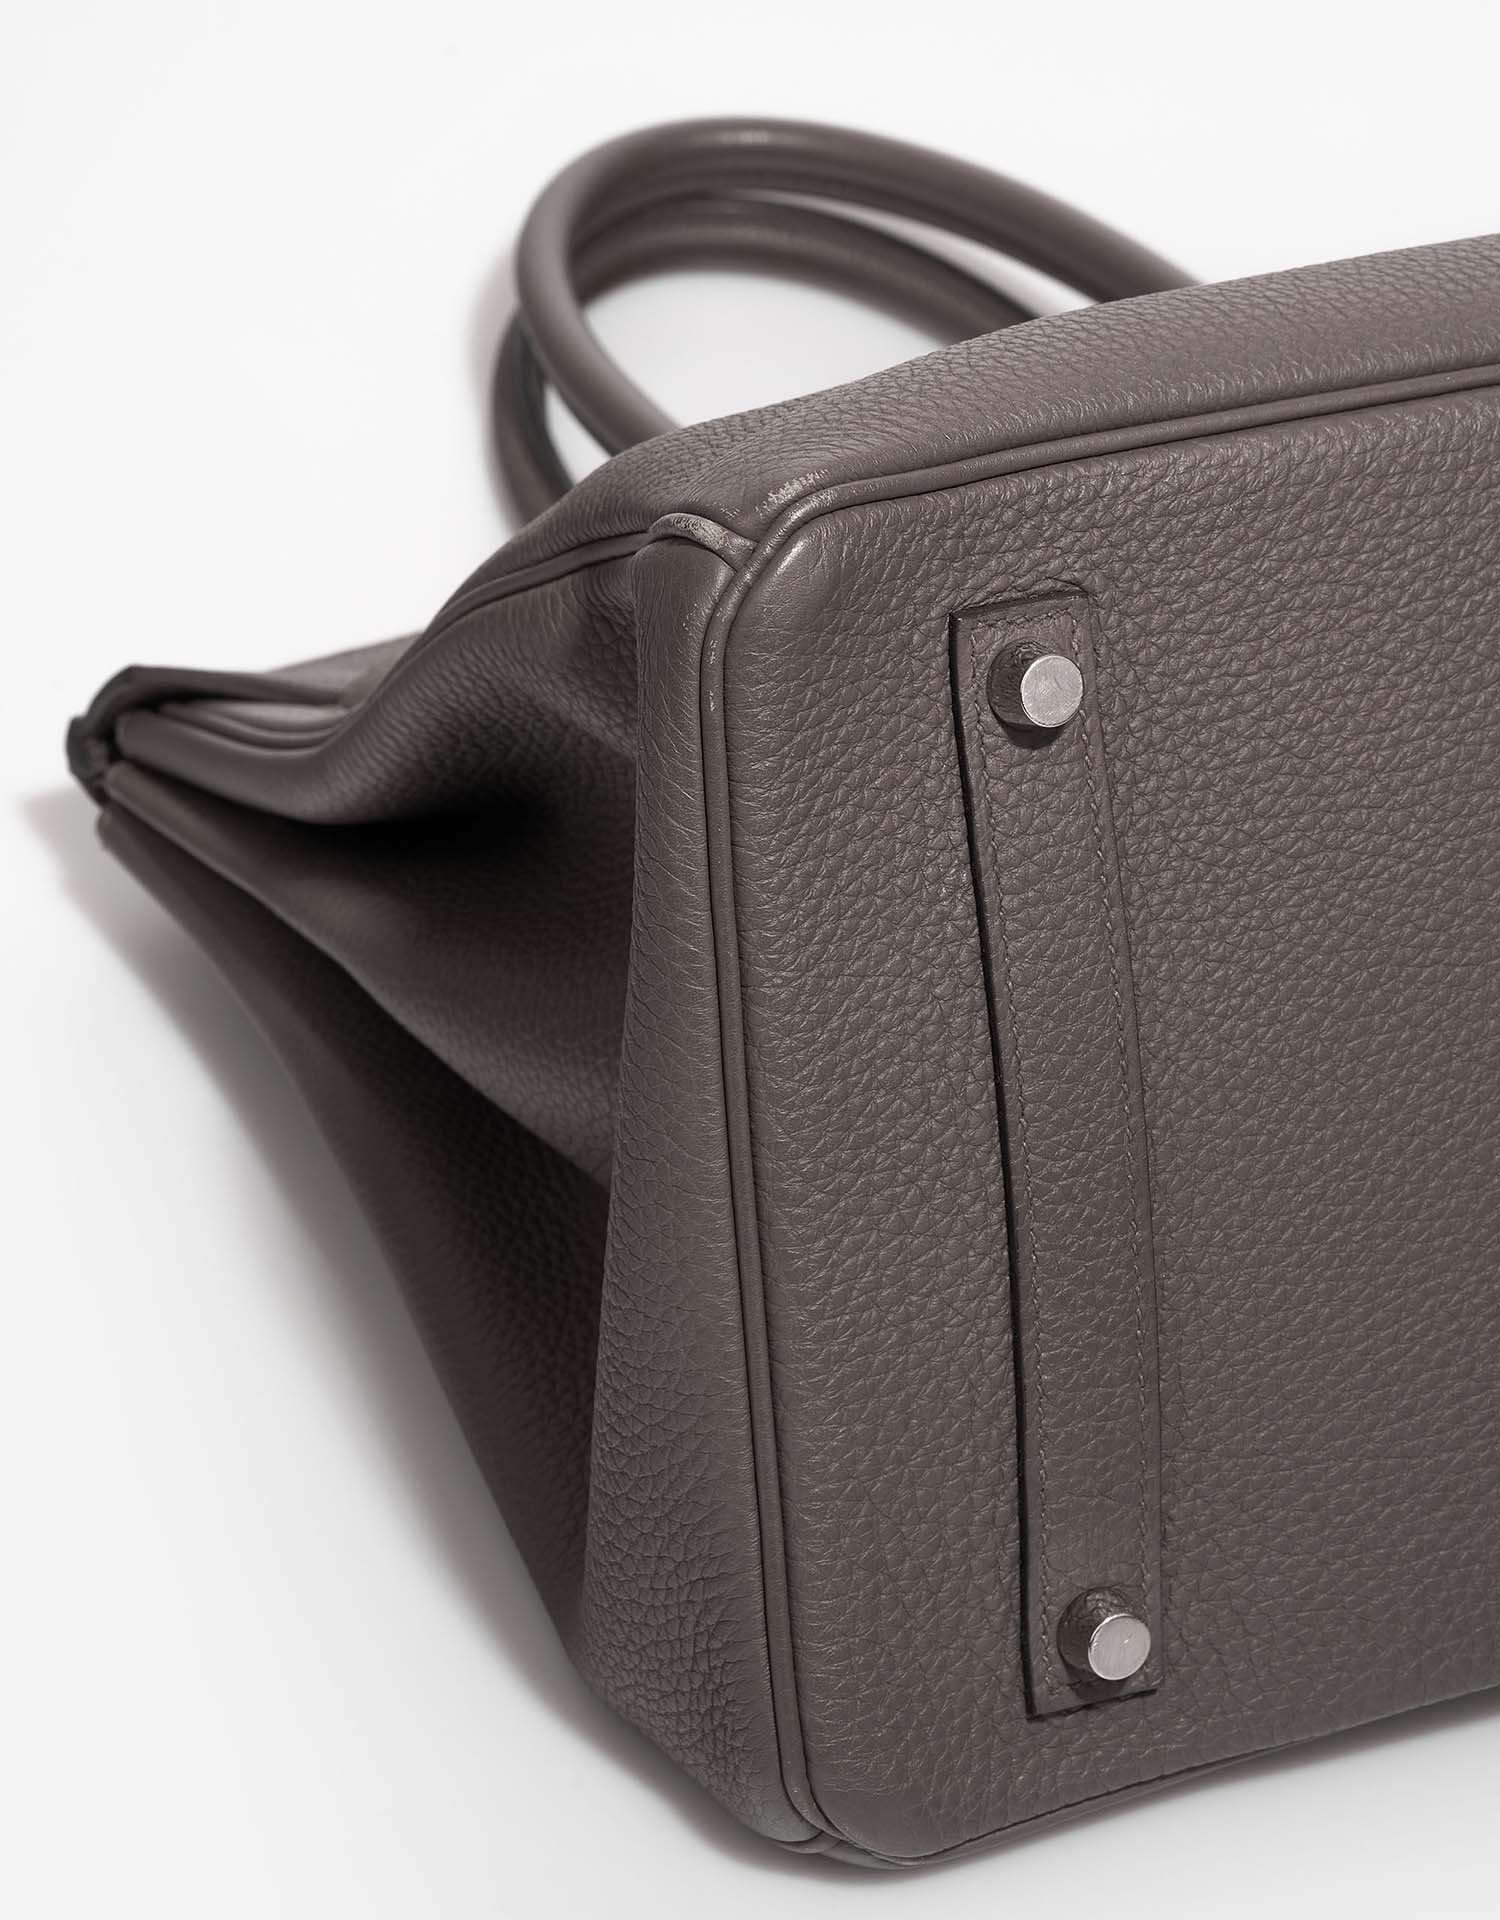 Hermès Birkin 35 Etain Gebrauchsspuren| Verkaufen Sie Ihre Designertasche auf Saclab.com